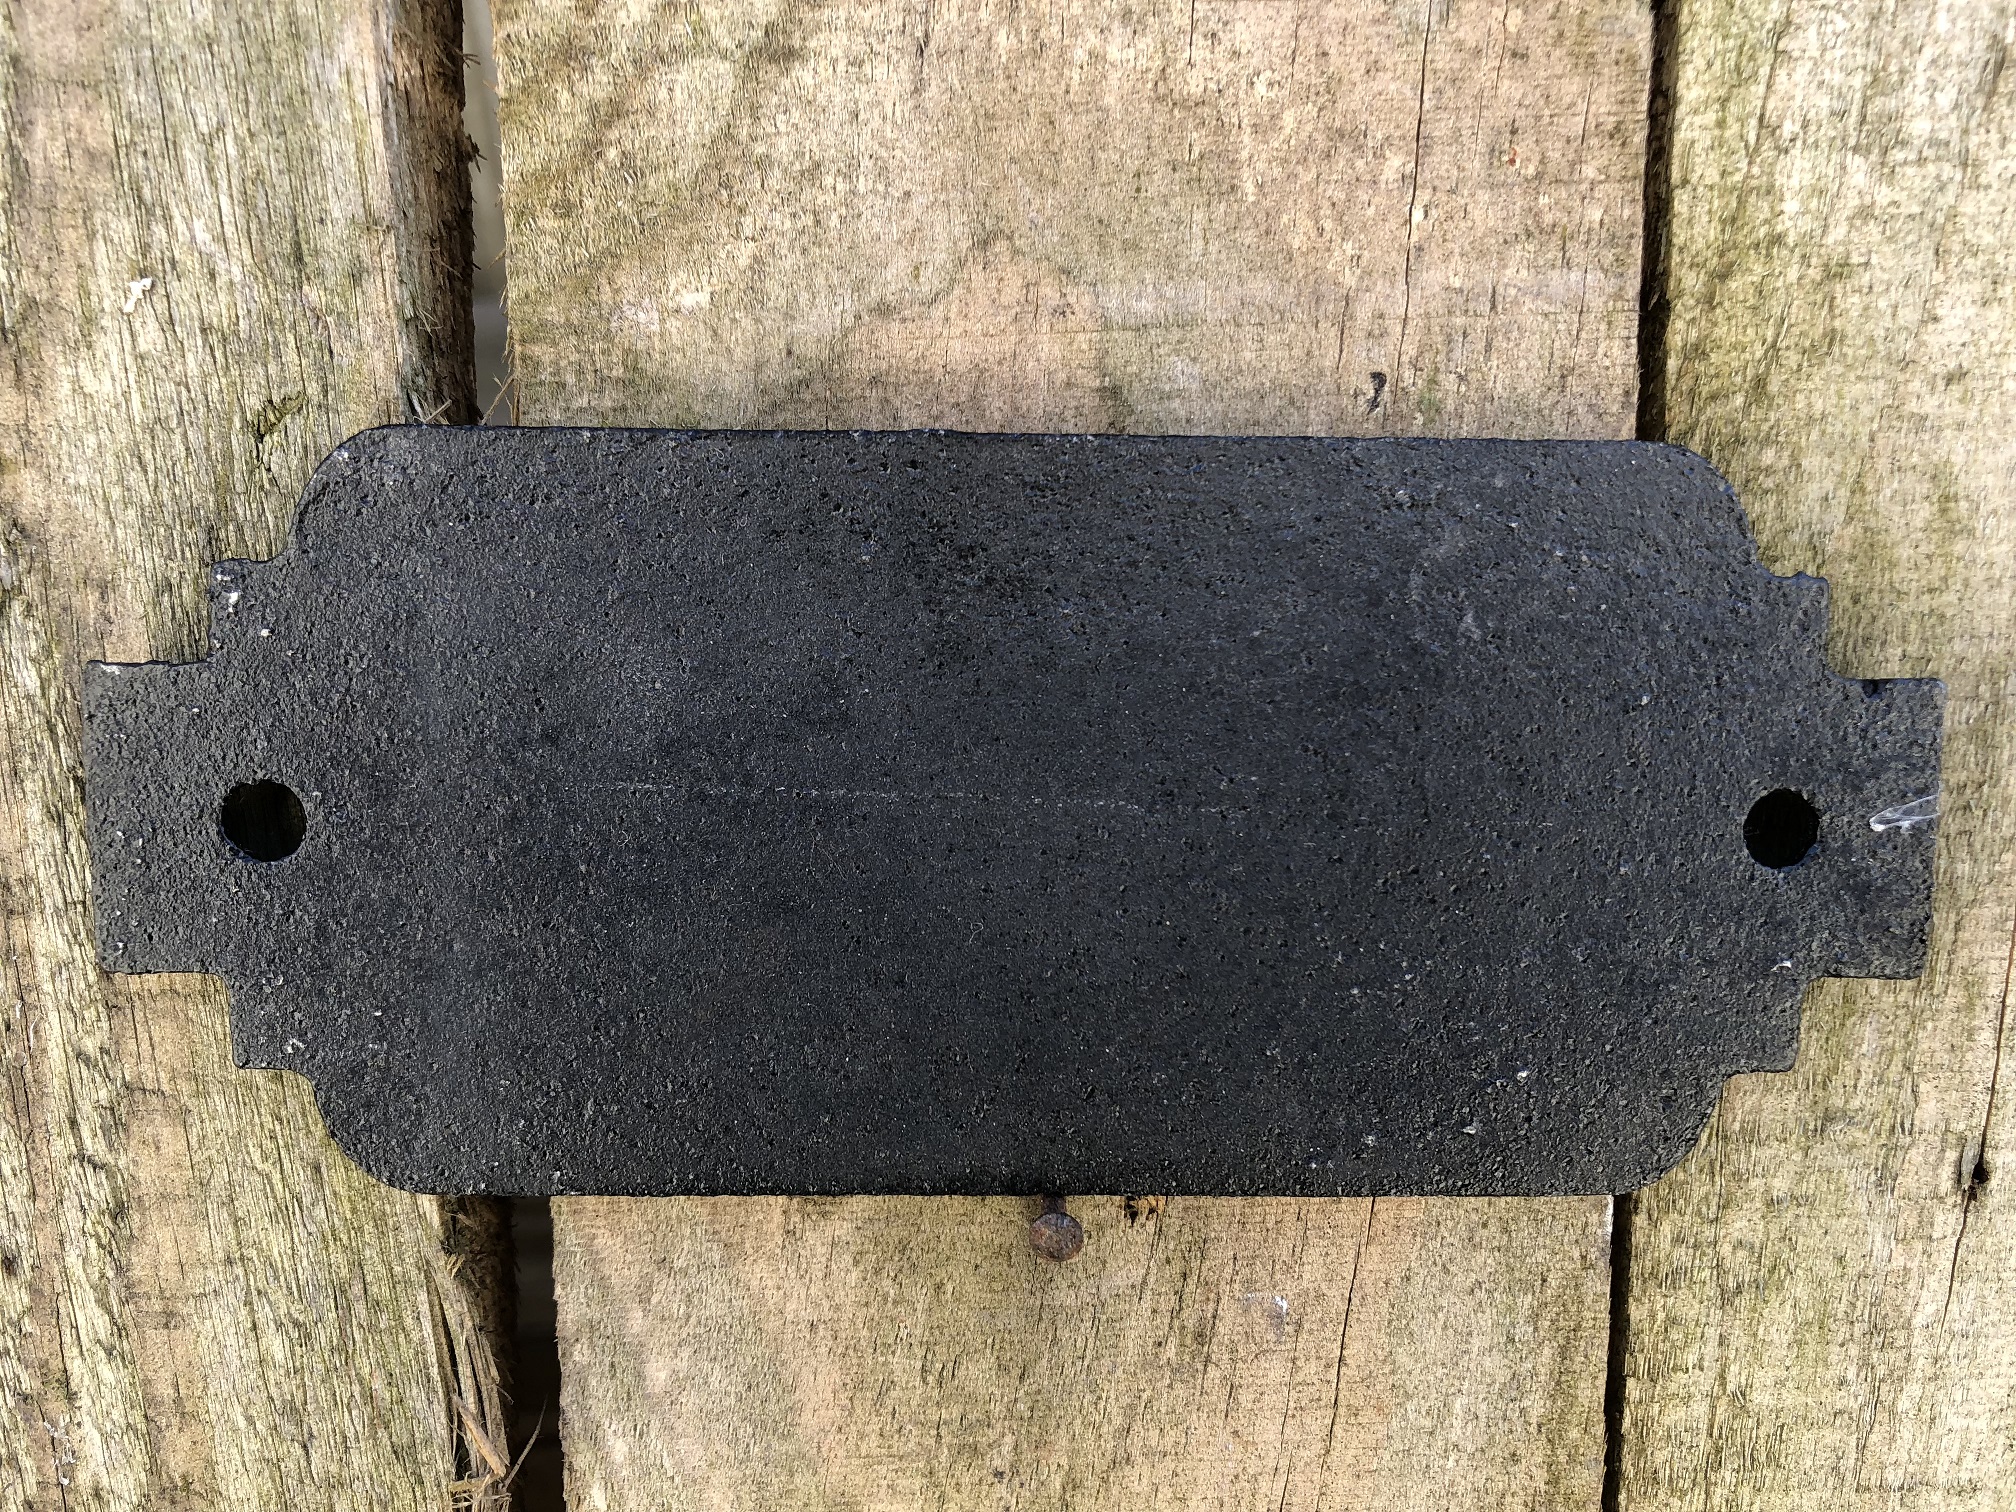 Bordje cast iron  sign 'Toilet' voor de deur